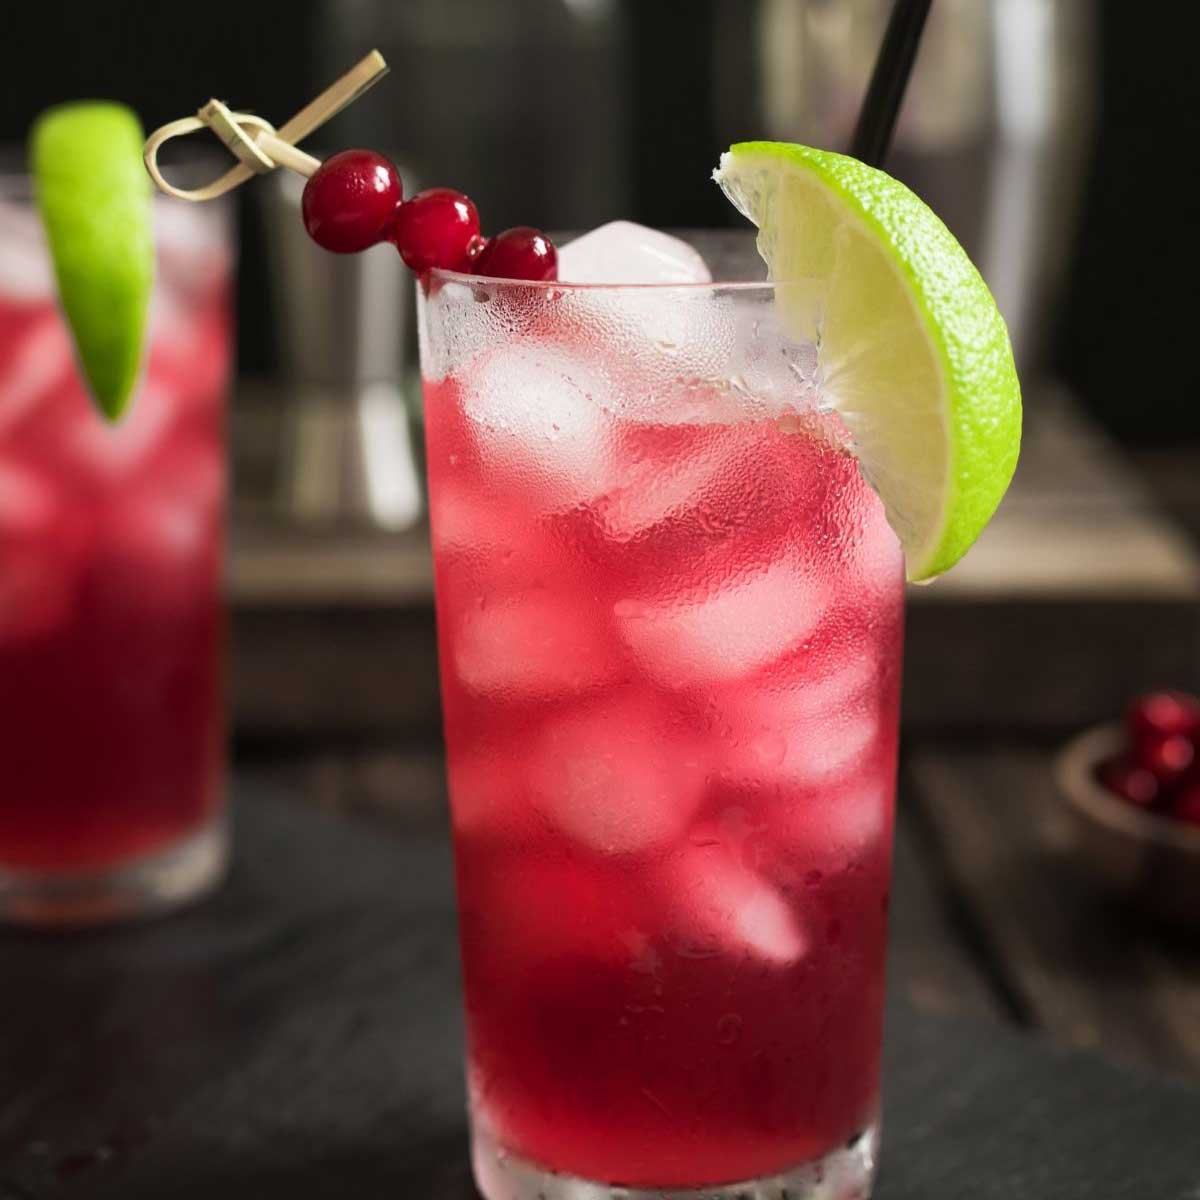 Cocktail di Cape codder in vetro Collins su sfondo scuro con contorno di mirtillo rosso e lime.